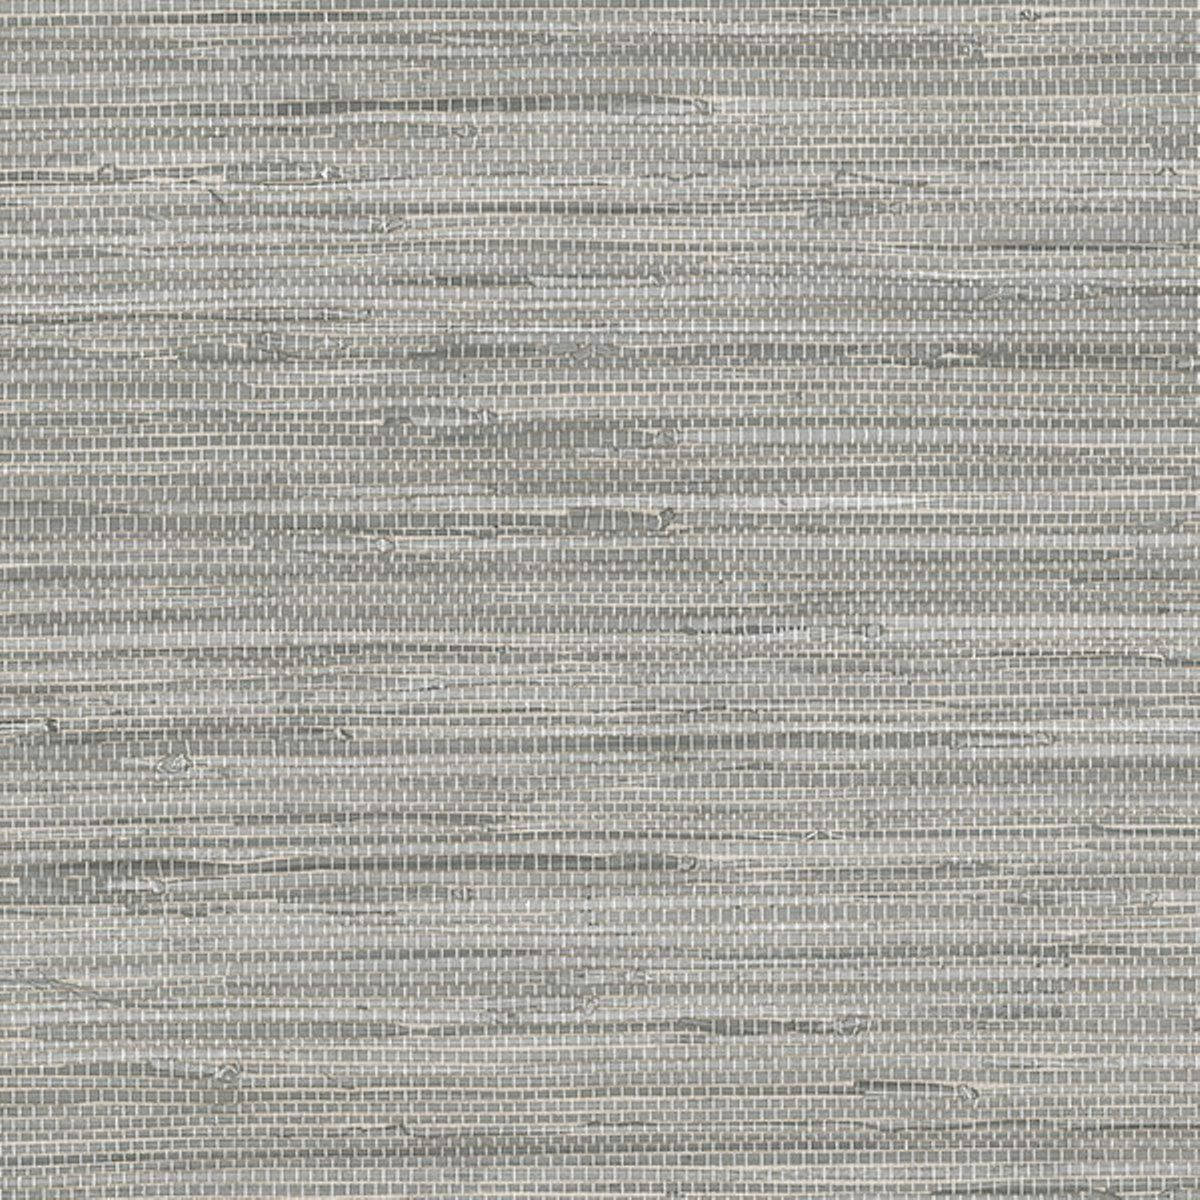 Textured Grey Vinyl Background